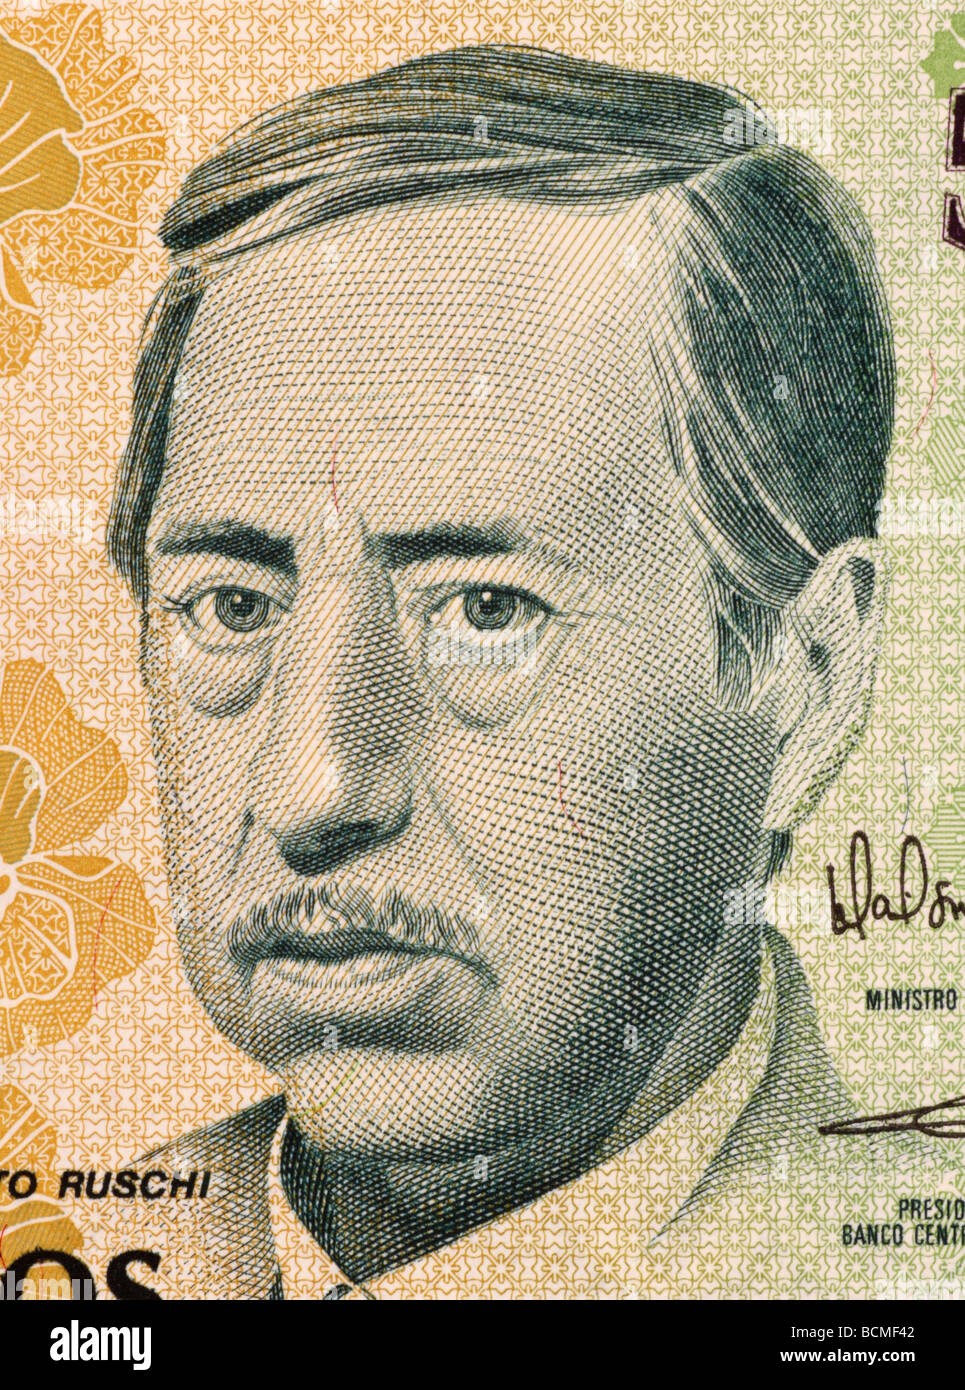 Augusto Ruschi auf 500 Cruzados Novos 1990 Banknote aus Brasilien Stockfoto